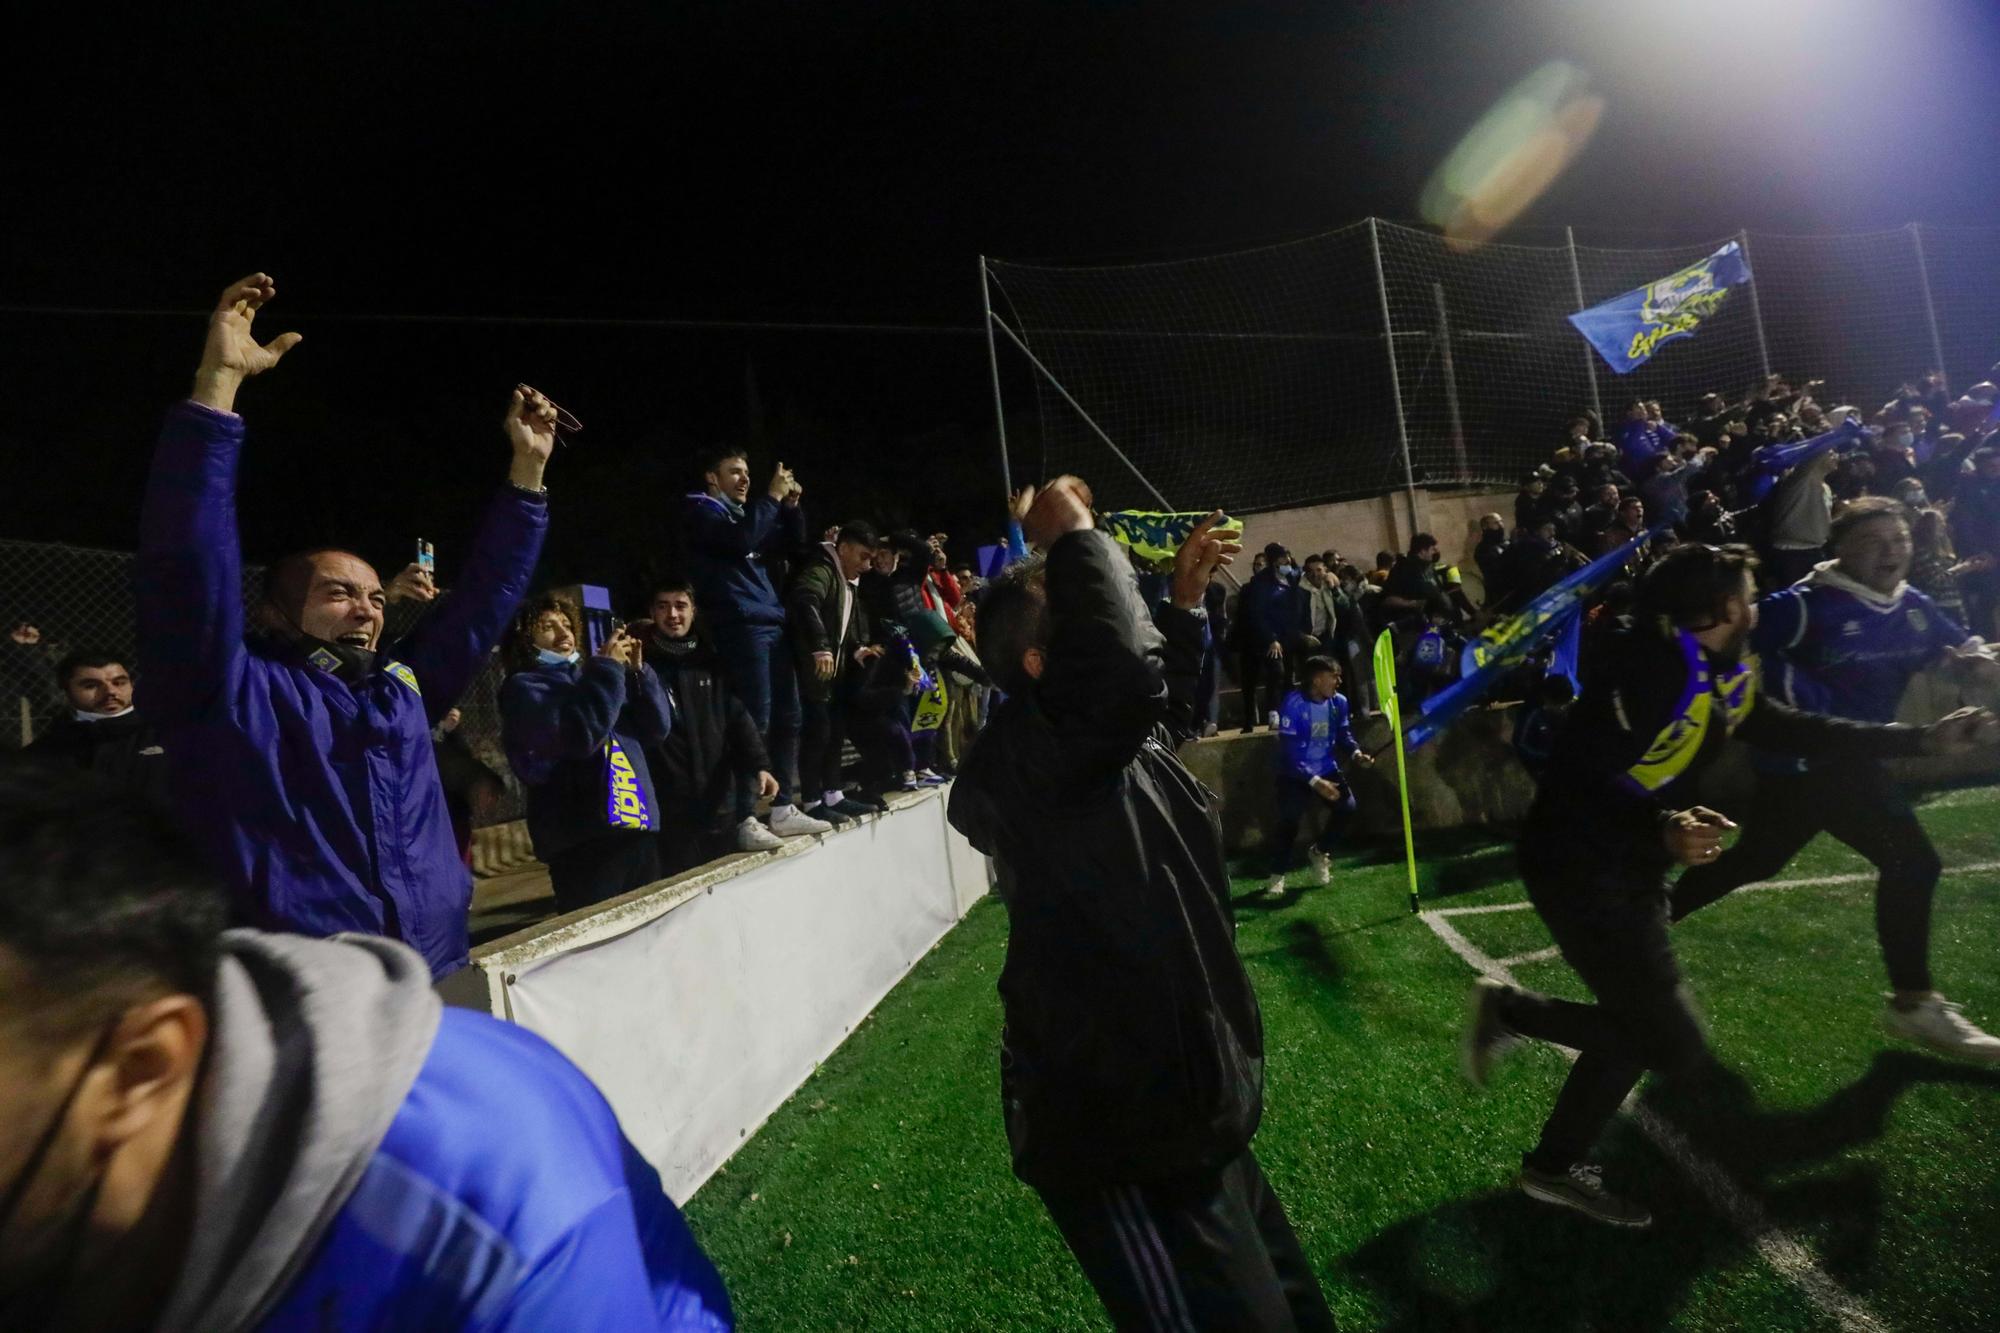 El Andratx elimina al Oviedo en la Copa del Rey